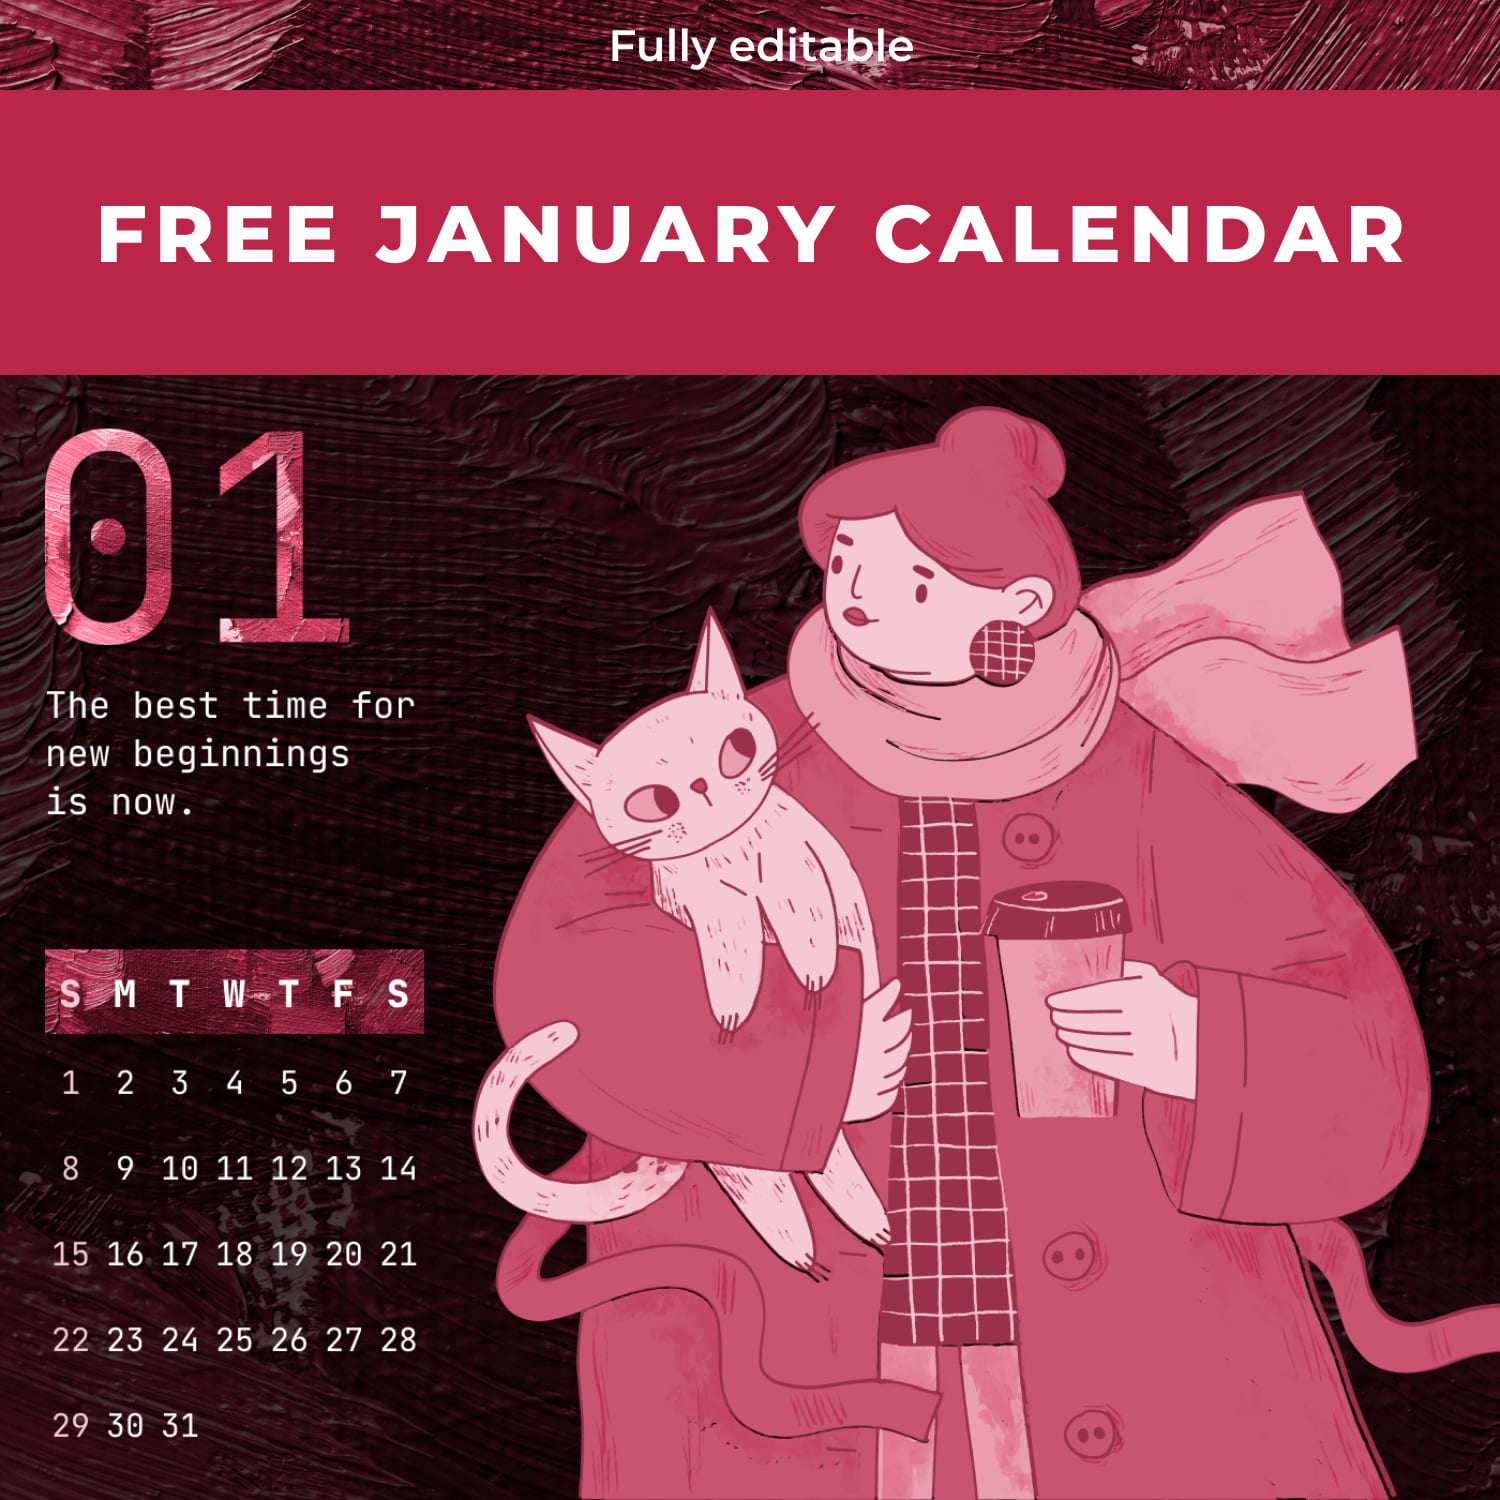 Free Cute January Calendar cover.